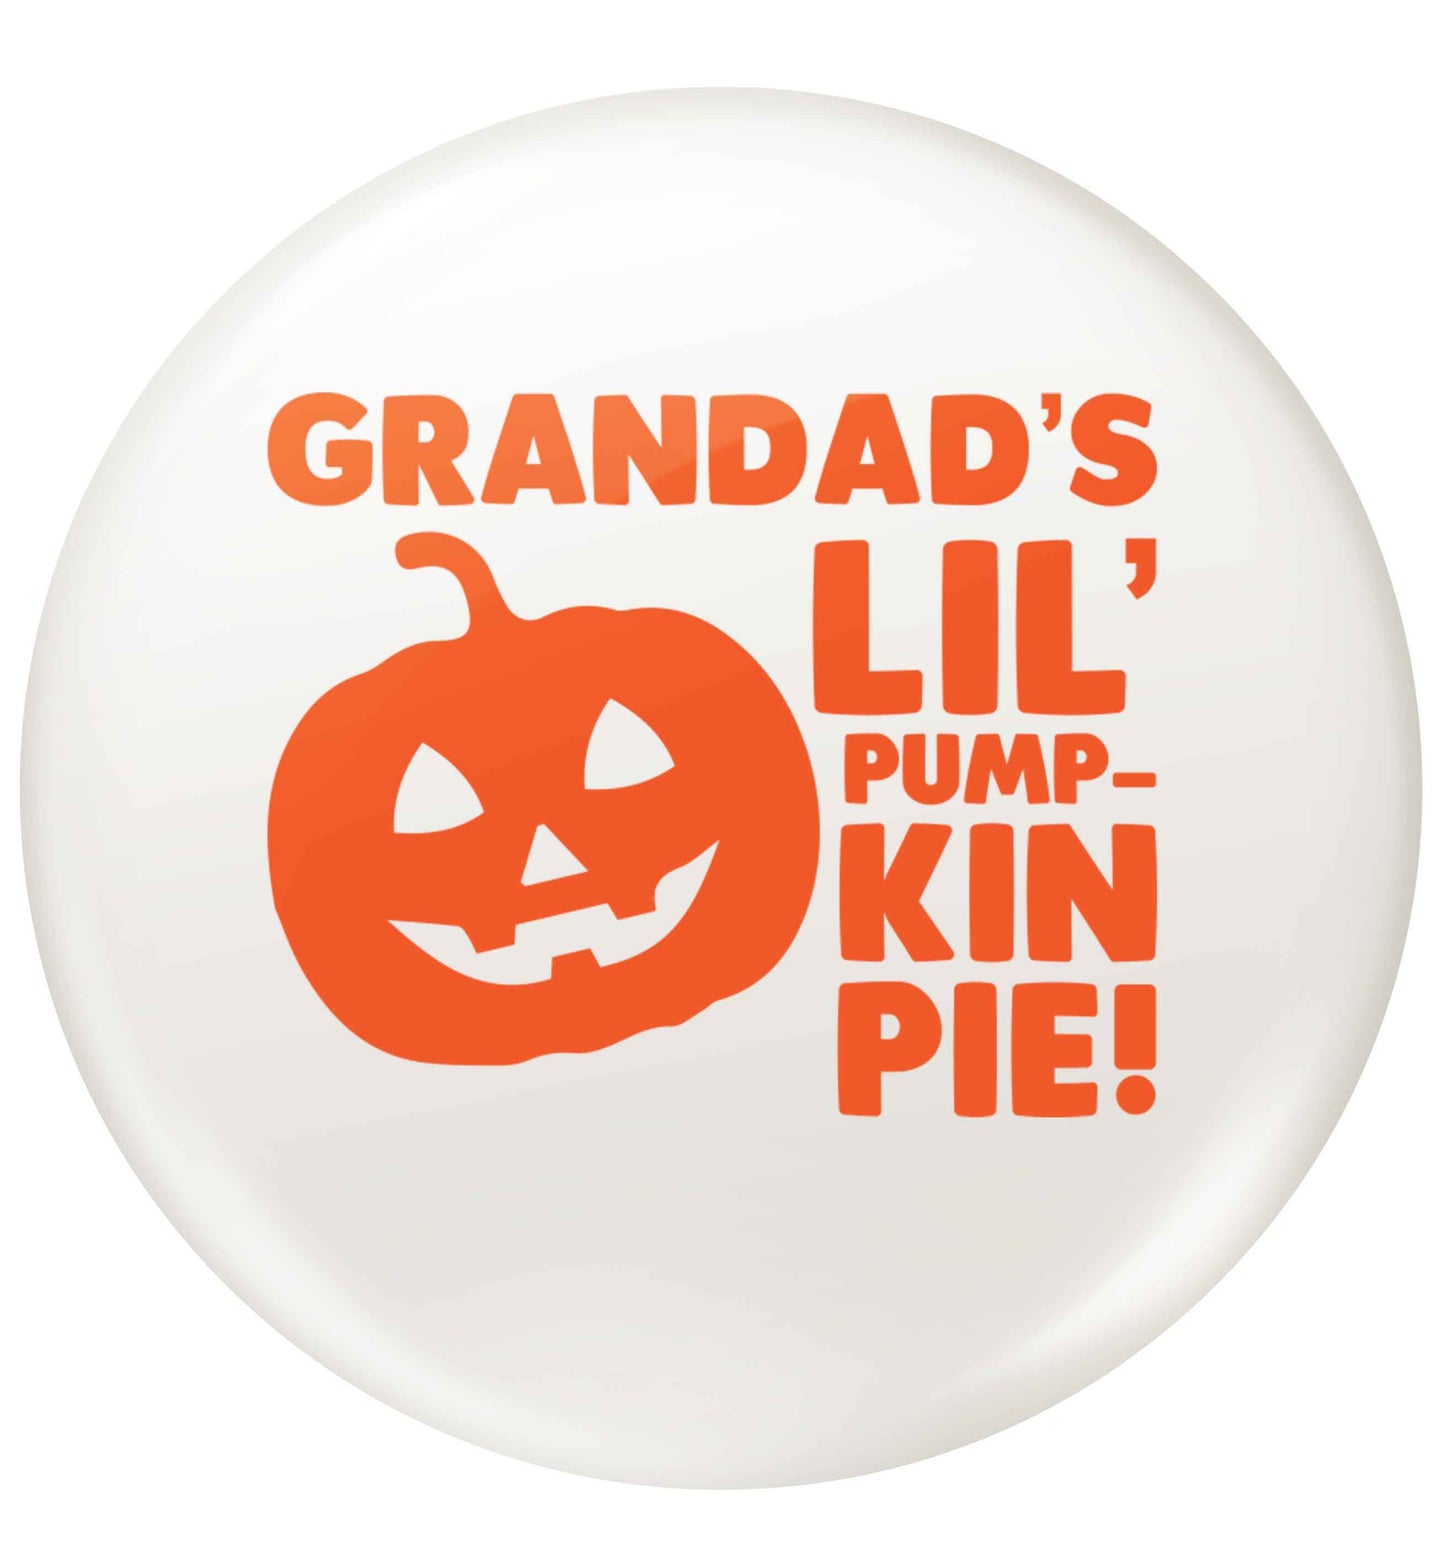 Grandad's lil' pumpkin pie small 25mm Pin badge